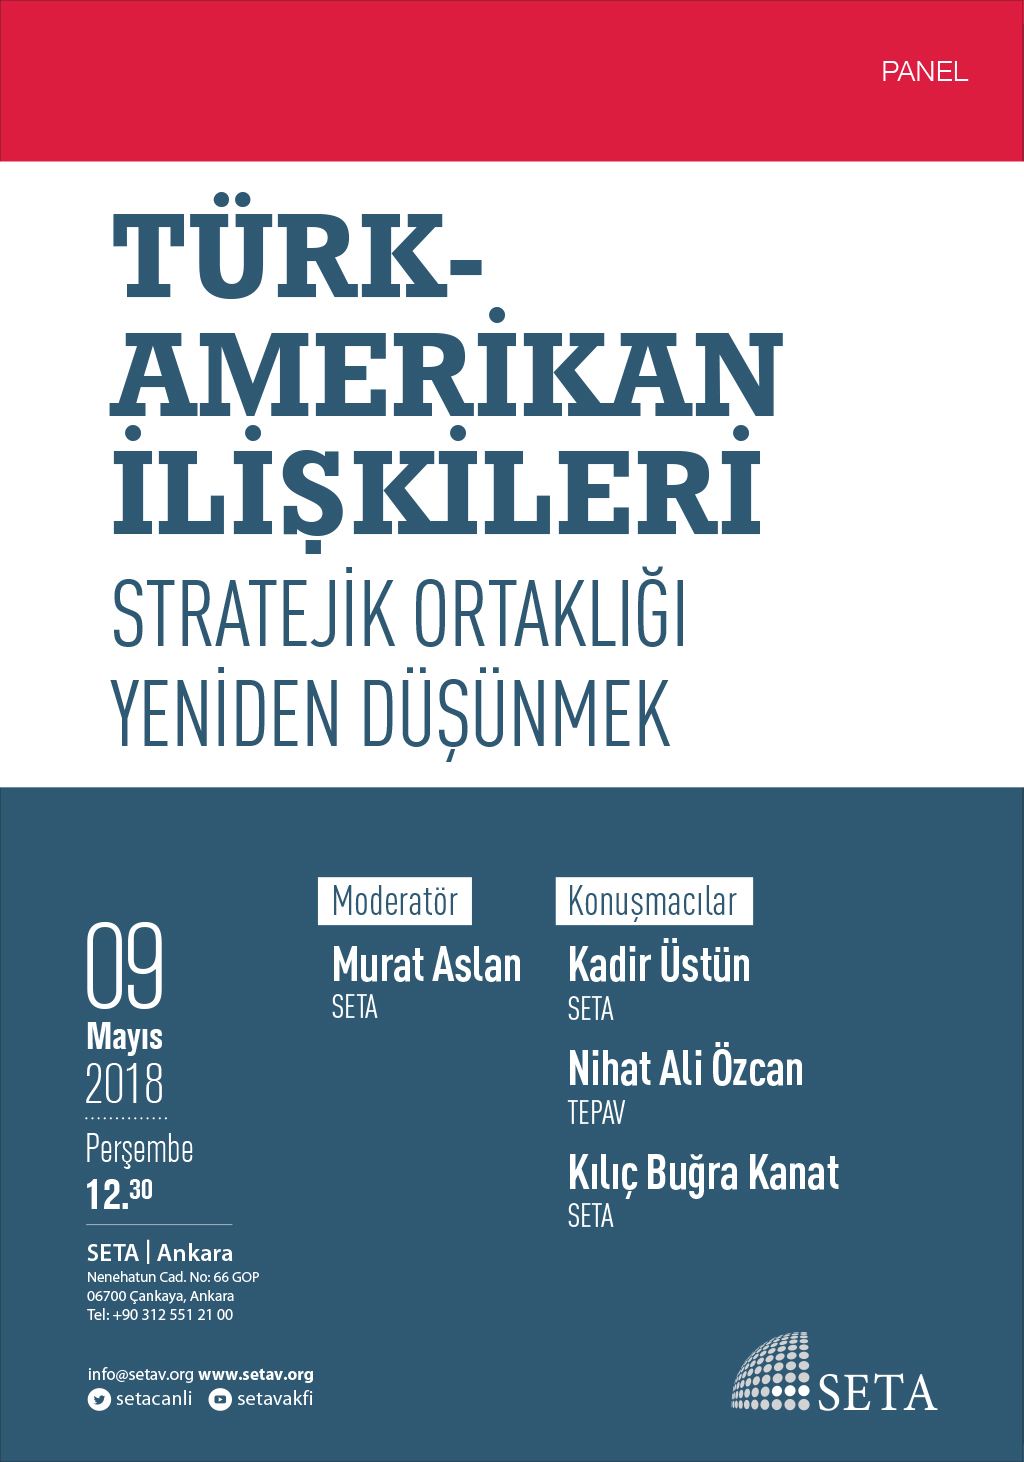 Panel: Türk-Amerikan İlişkileri | Stratejik Ortaklığı Yeniden Düşünmek